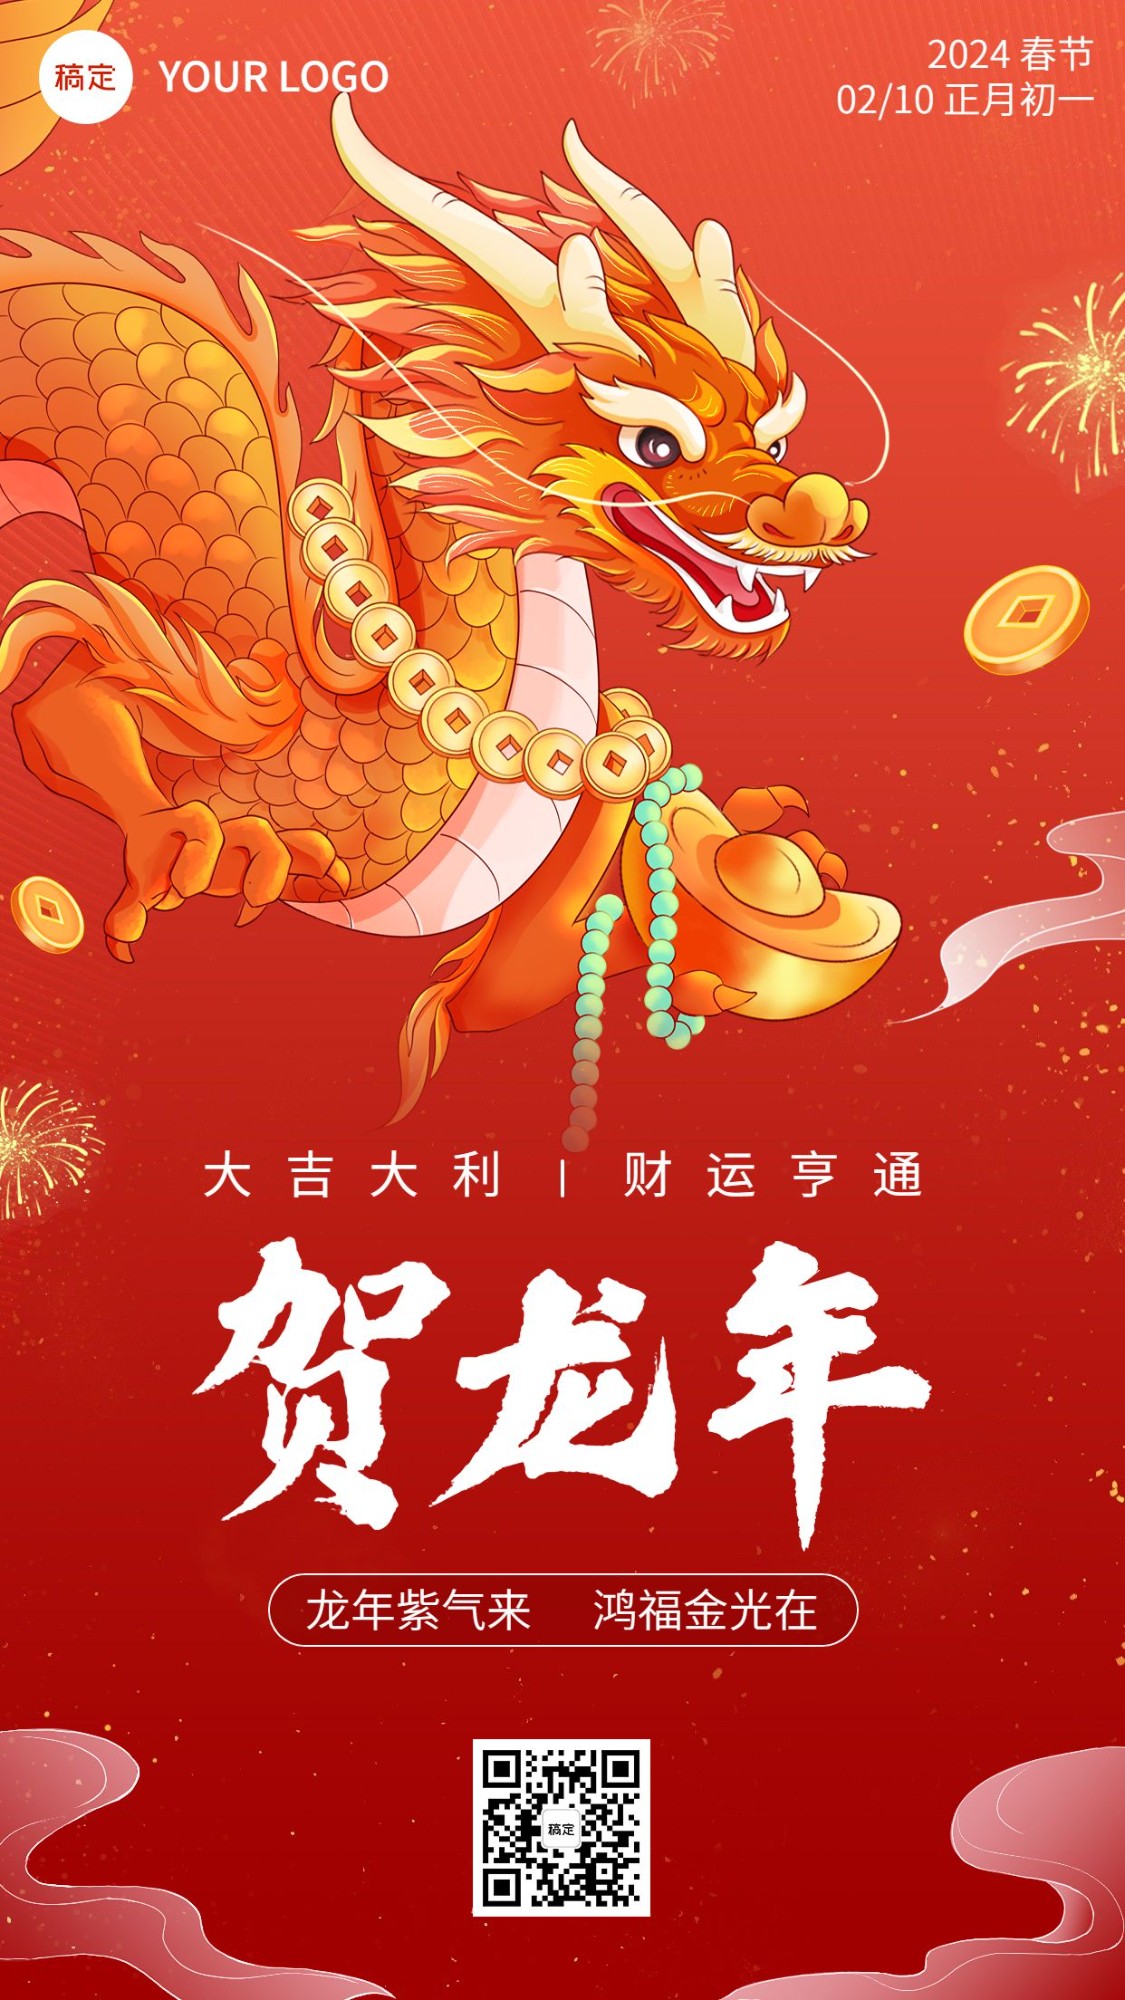 春节金融保险龙年正月初一节日祝福国潮风插画手机海报